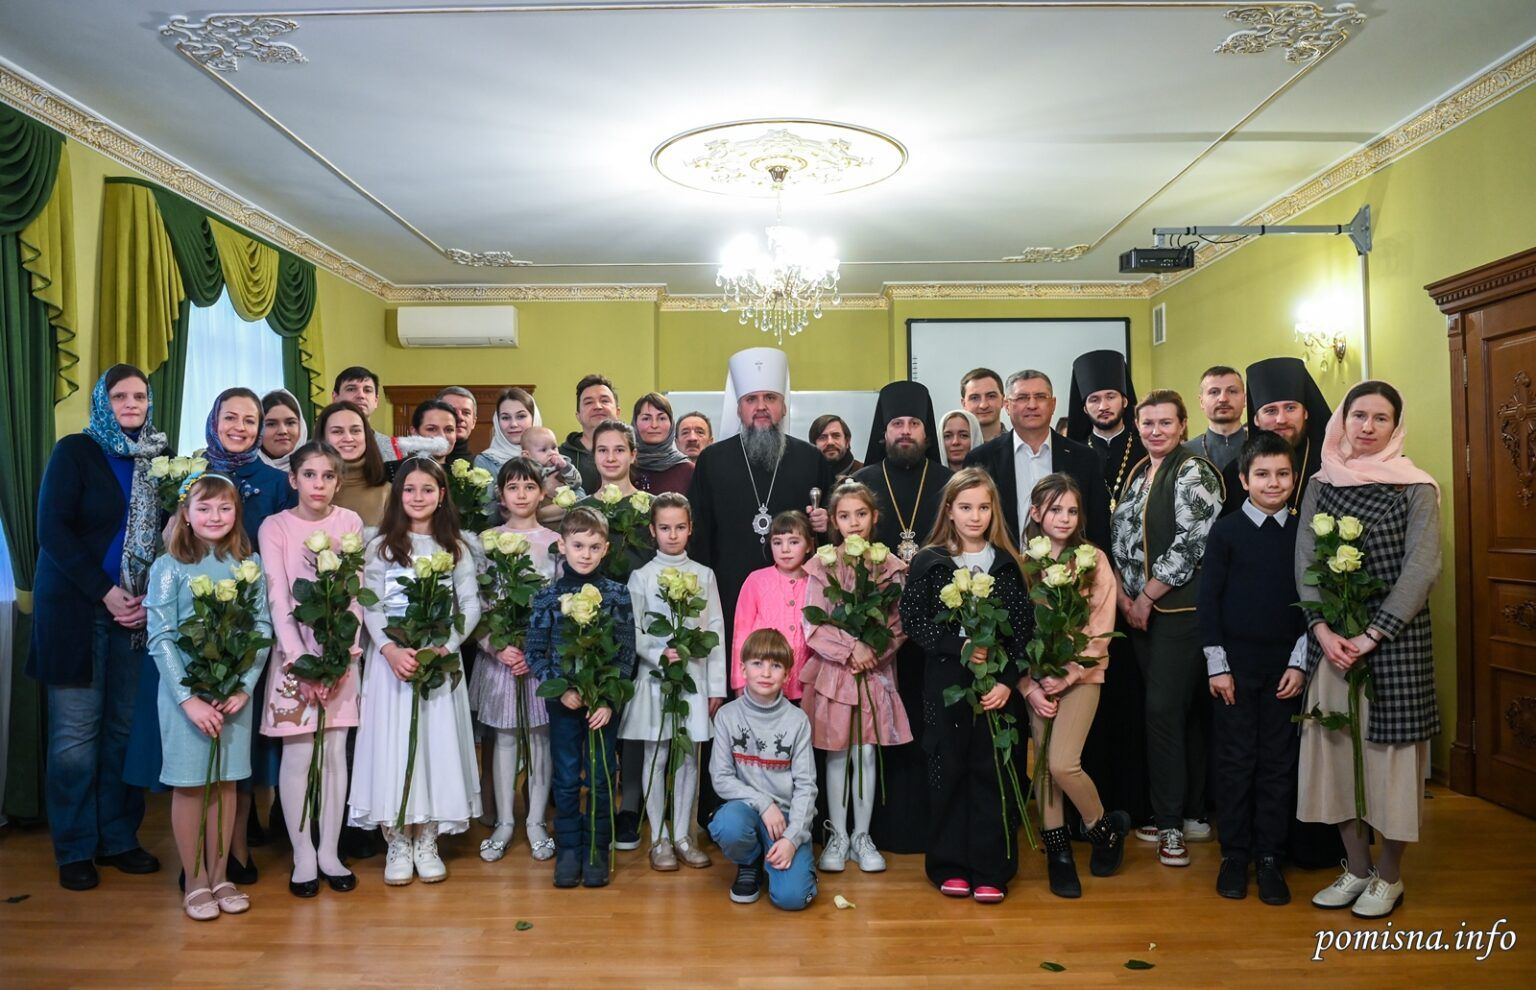 Першу недільну школу у Києво-Печерській лаврі відкрив Епіфаній